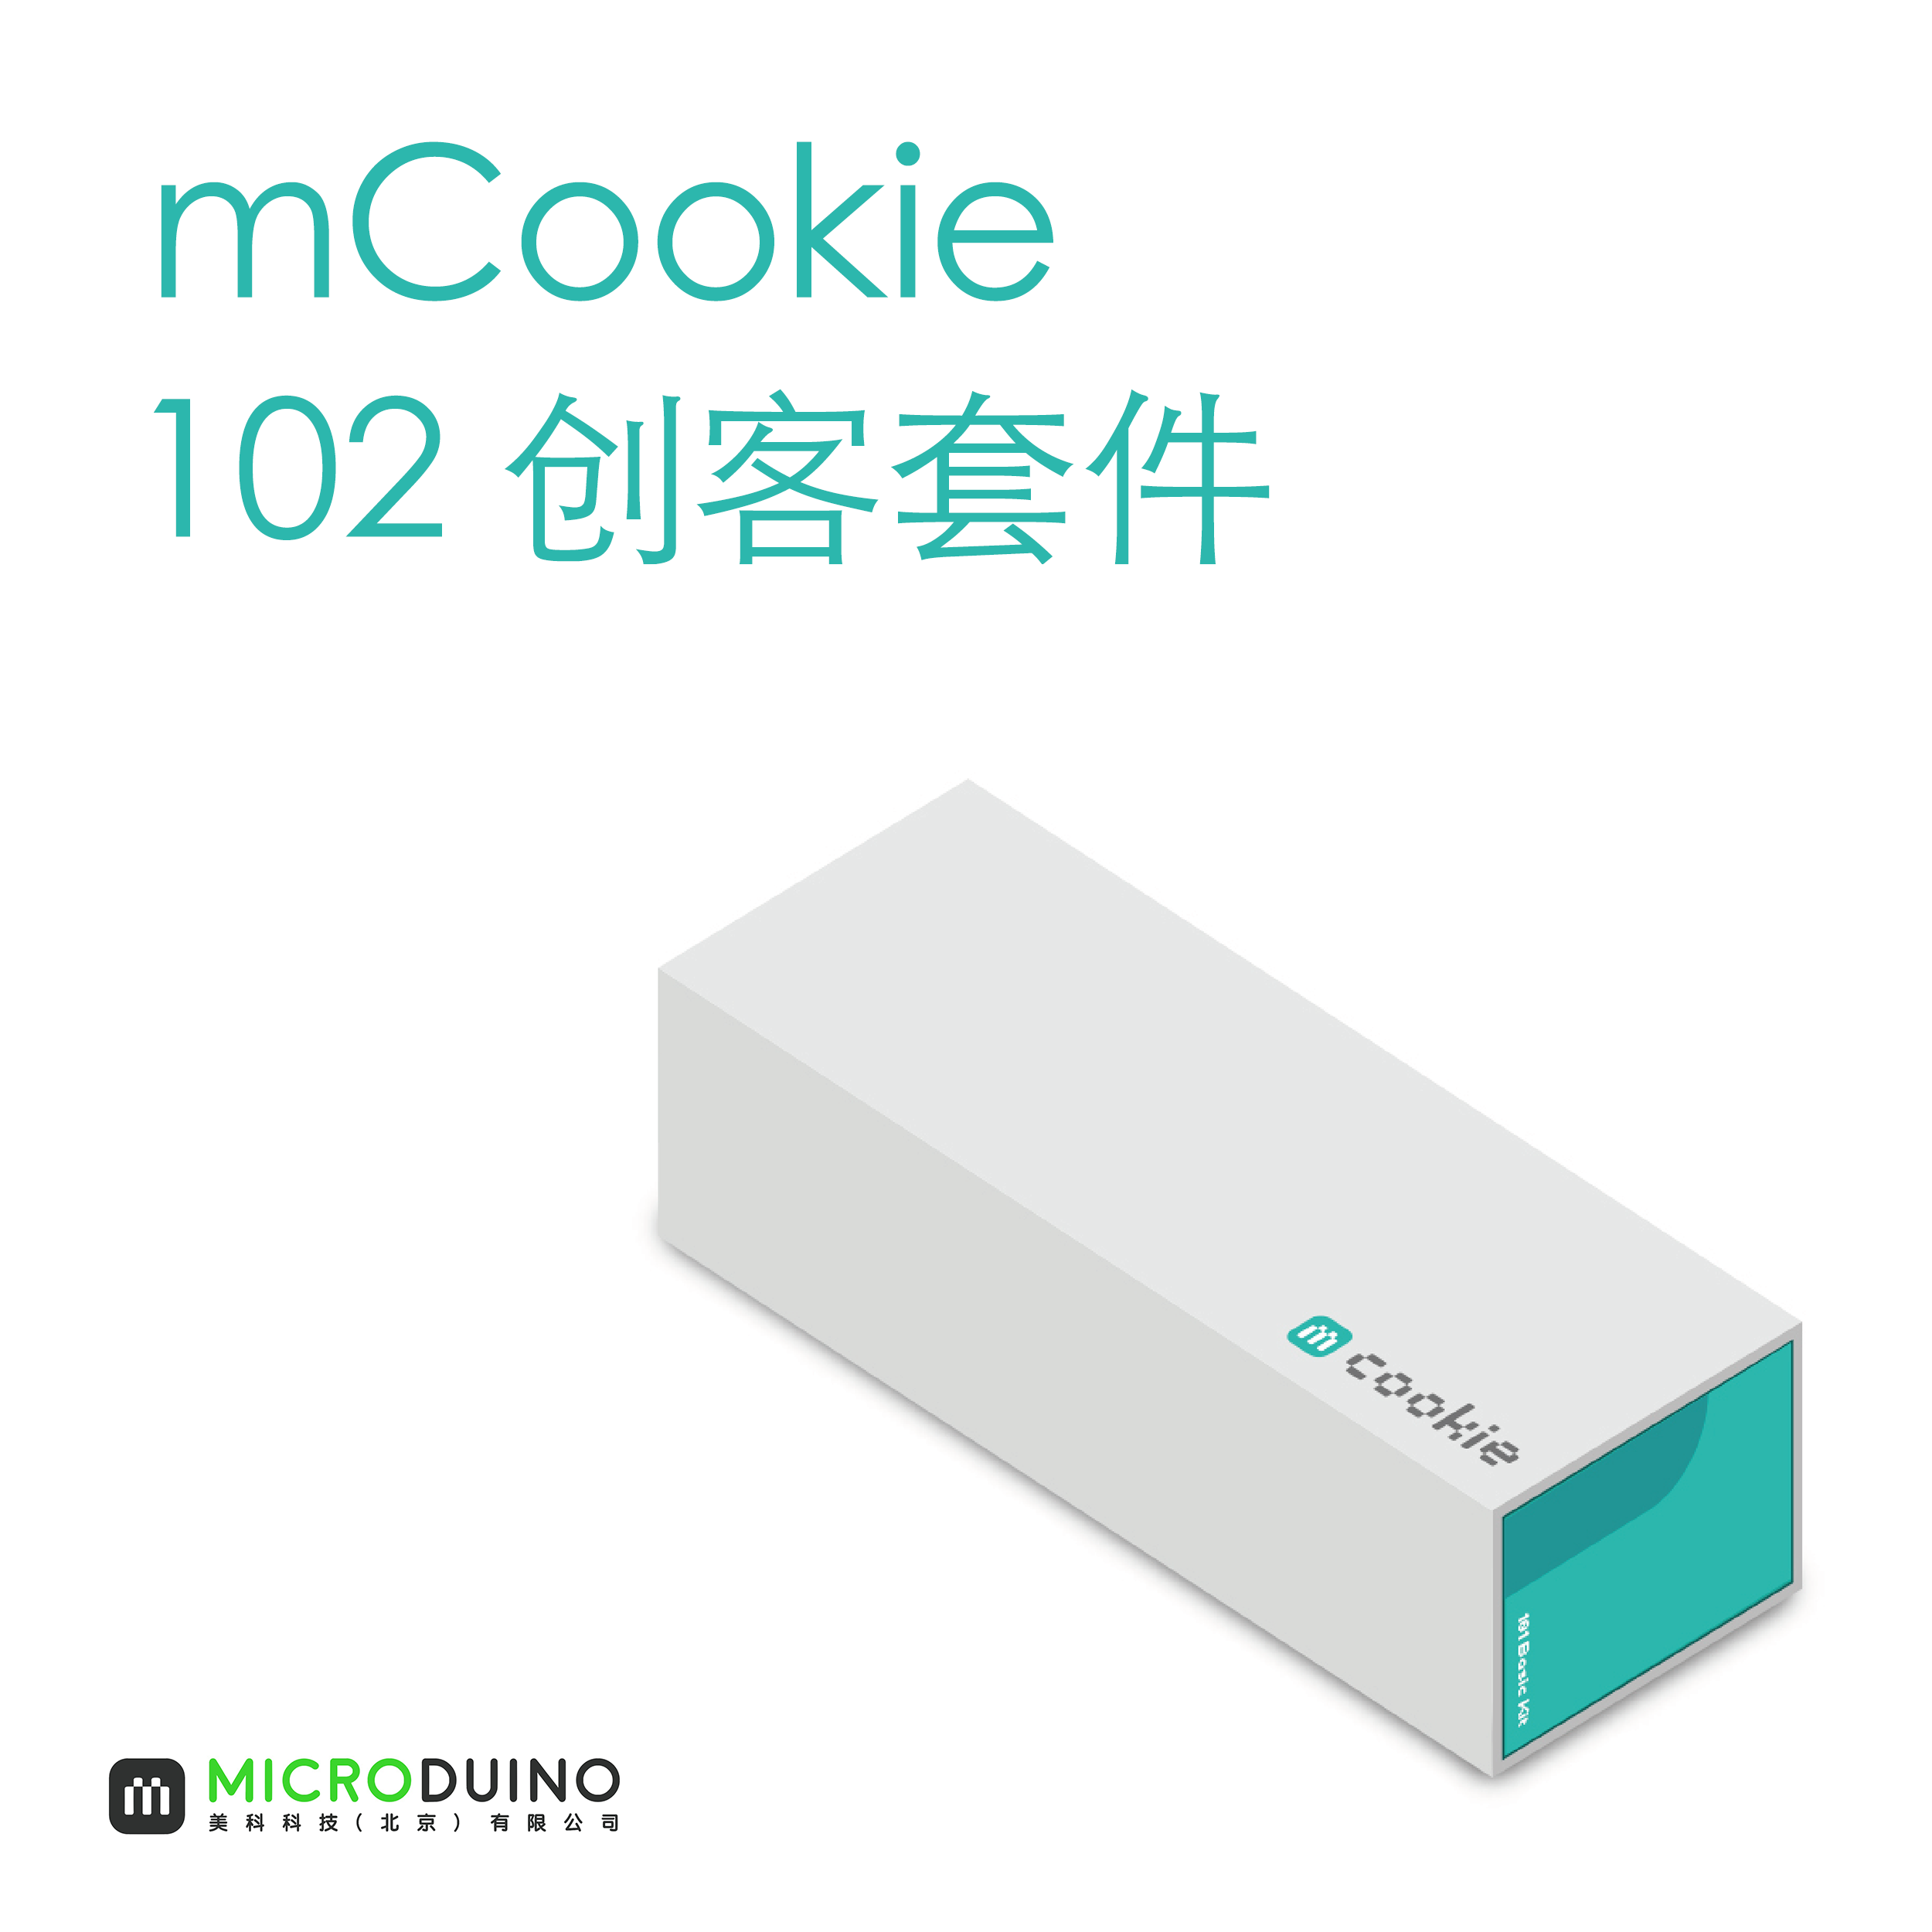 mCookie 102创客套件